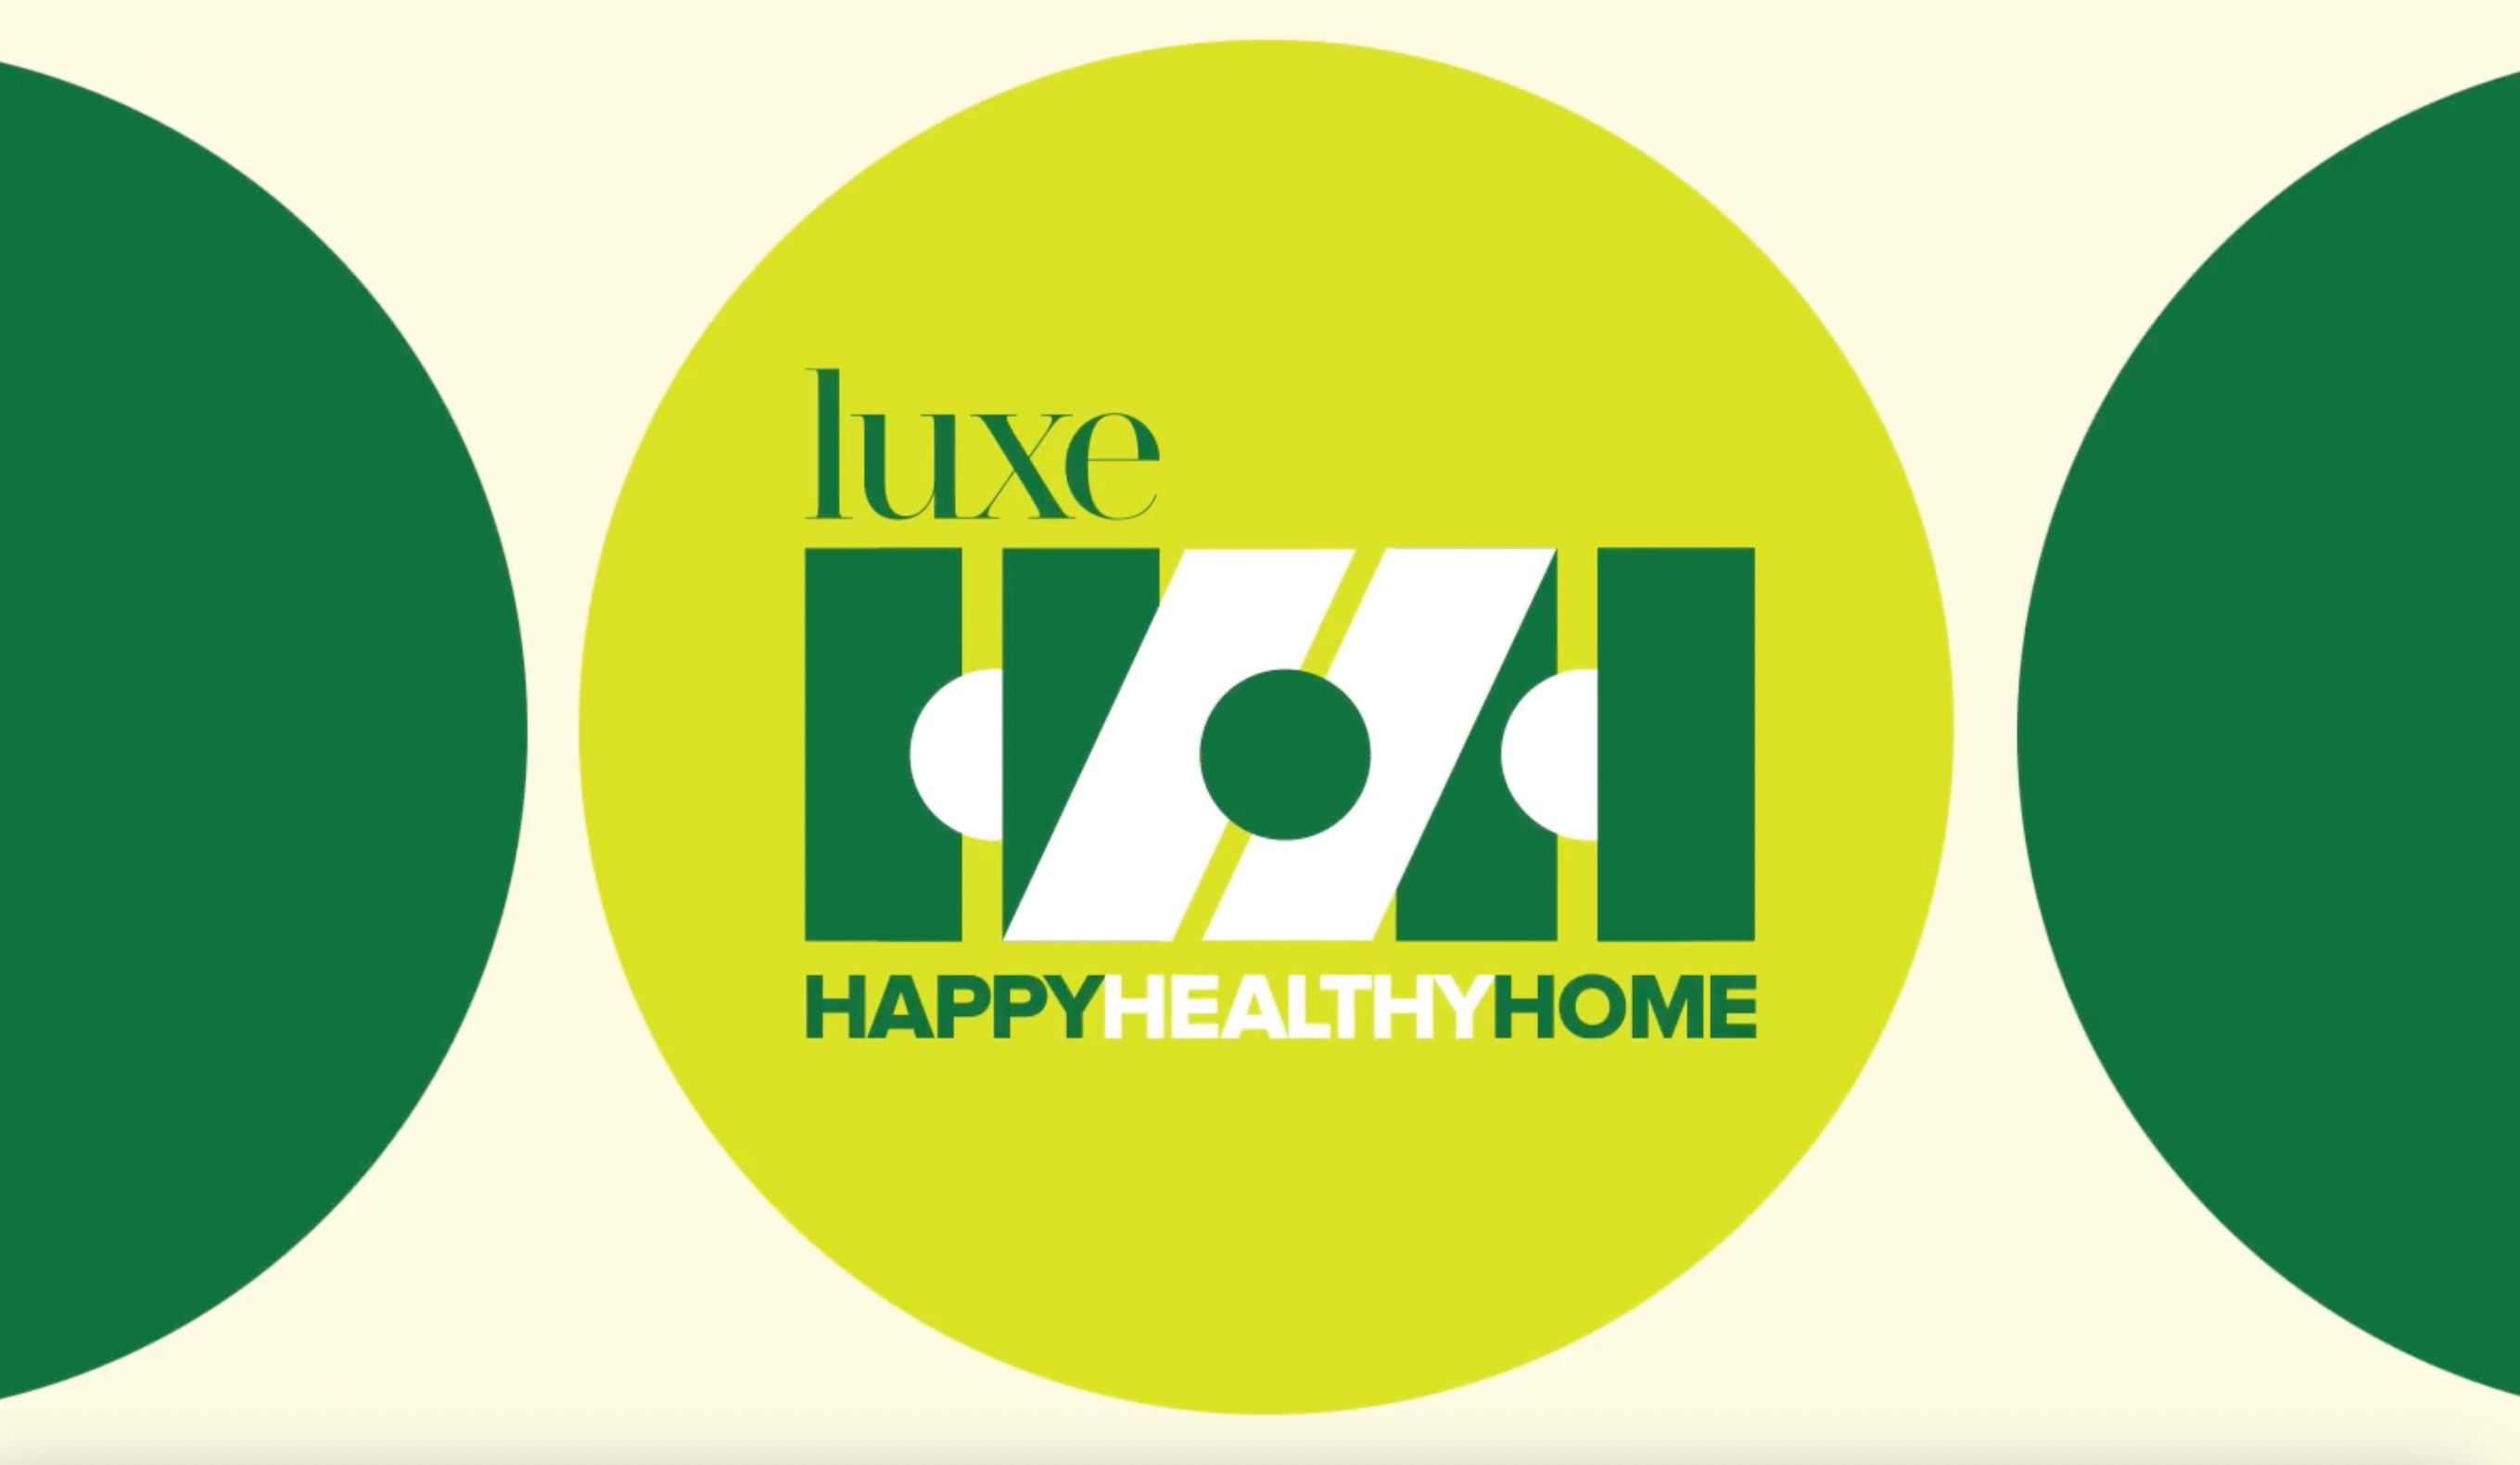 Happy Healthy Home Image